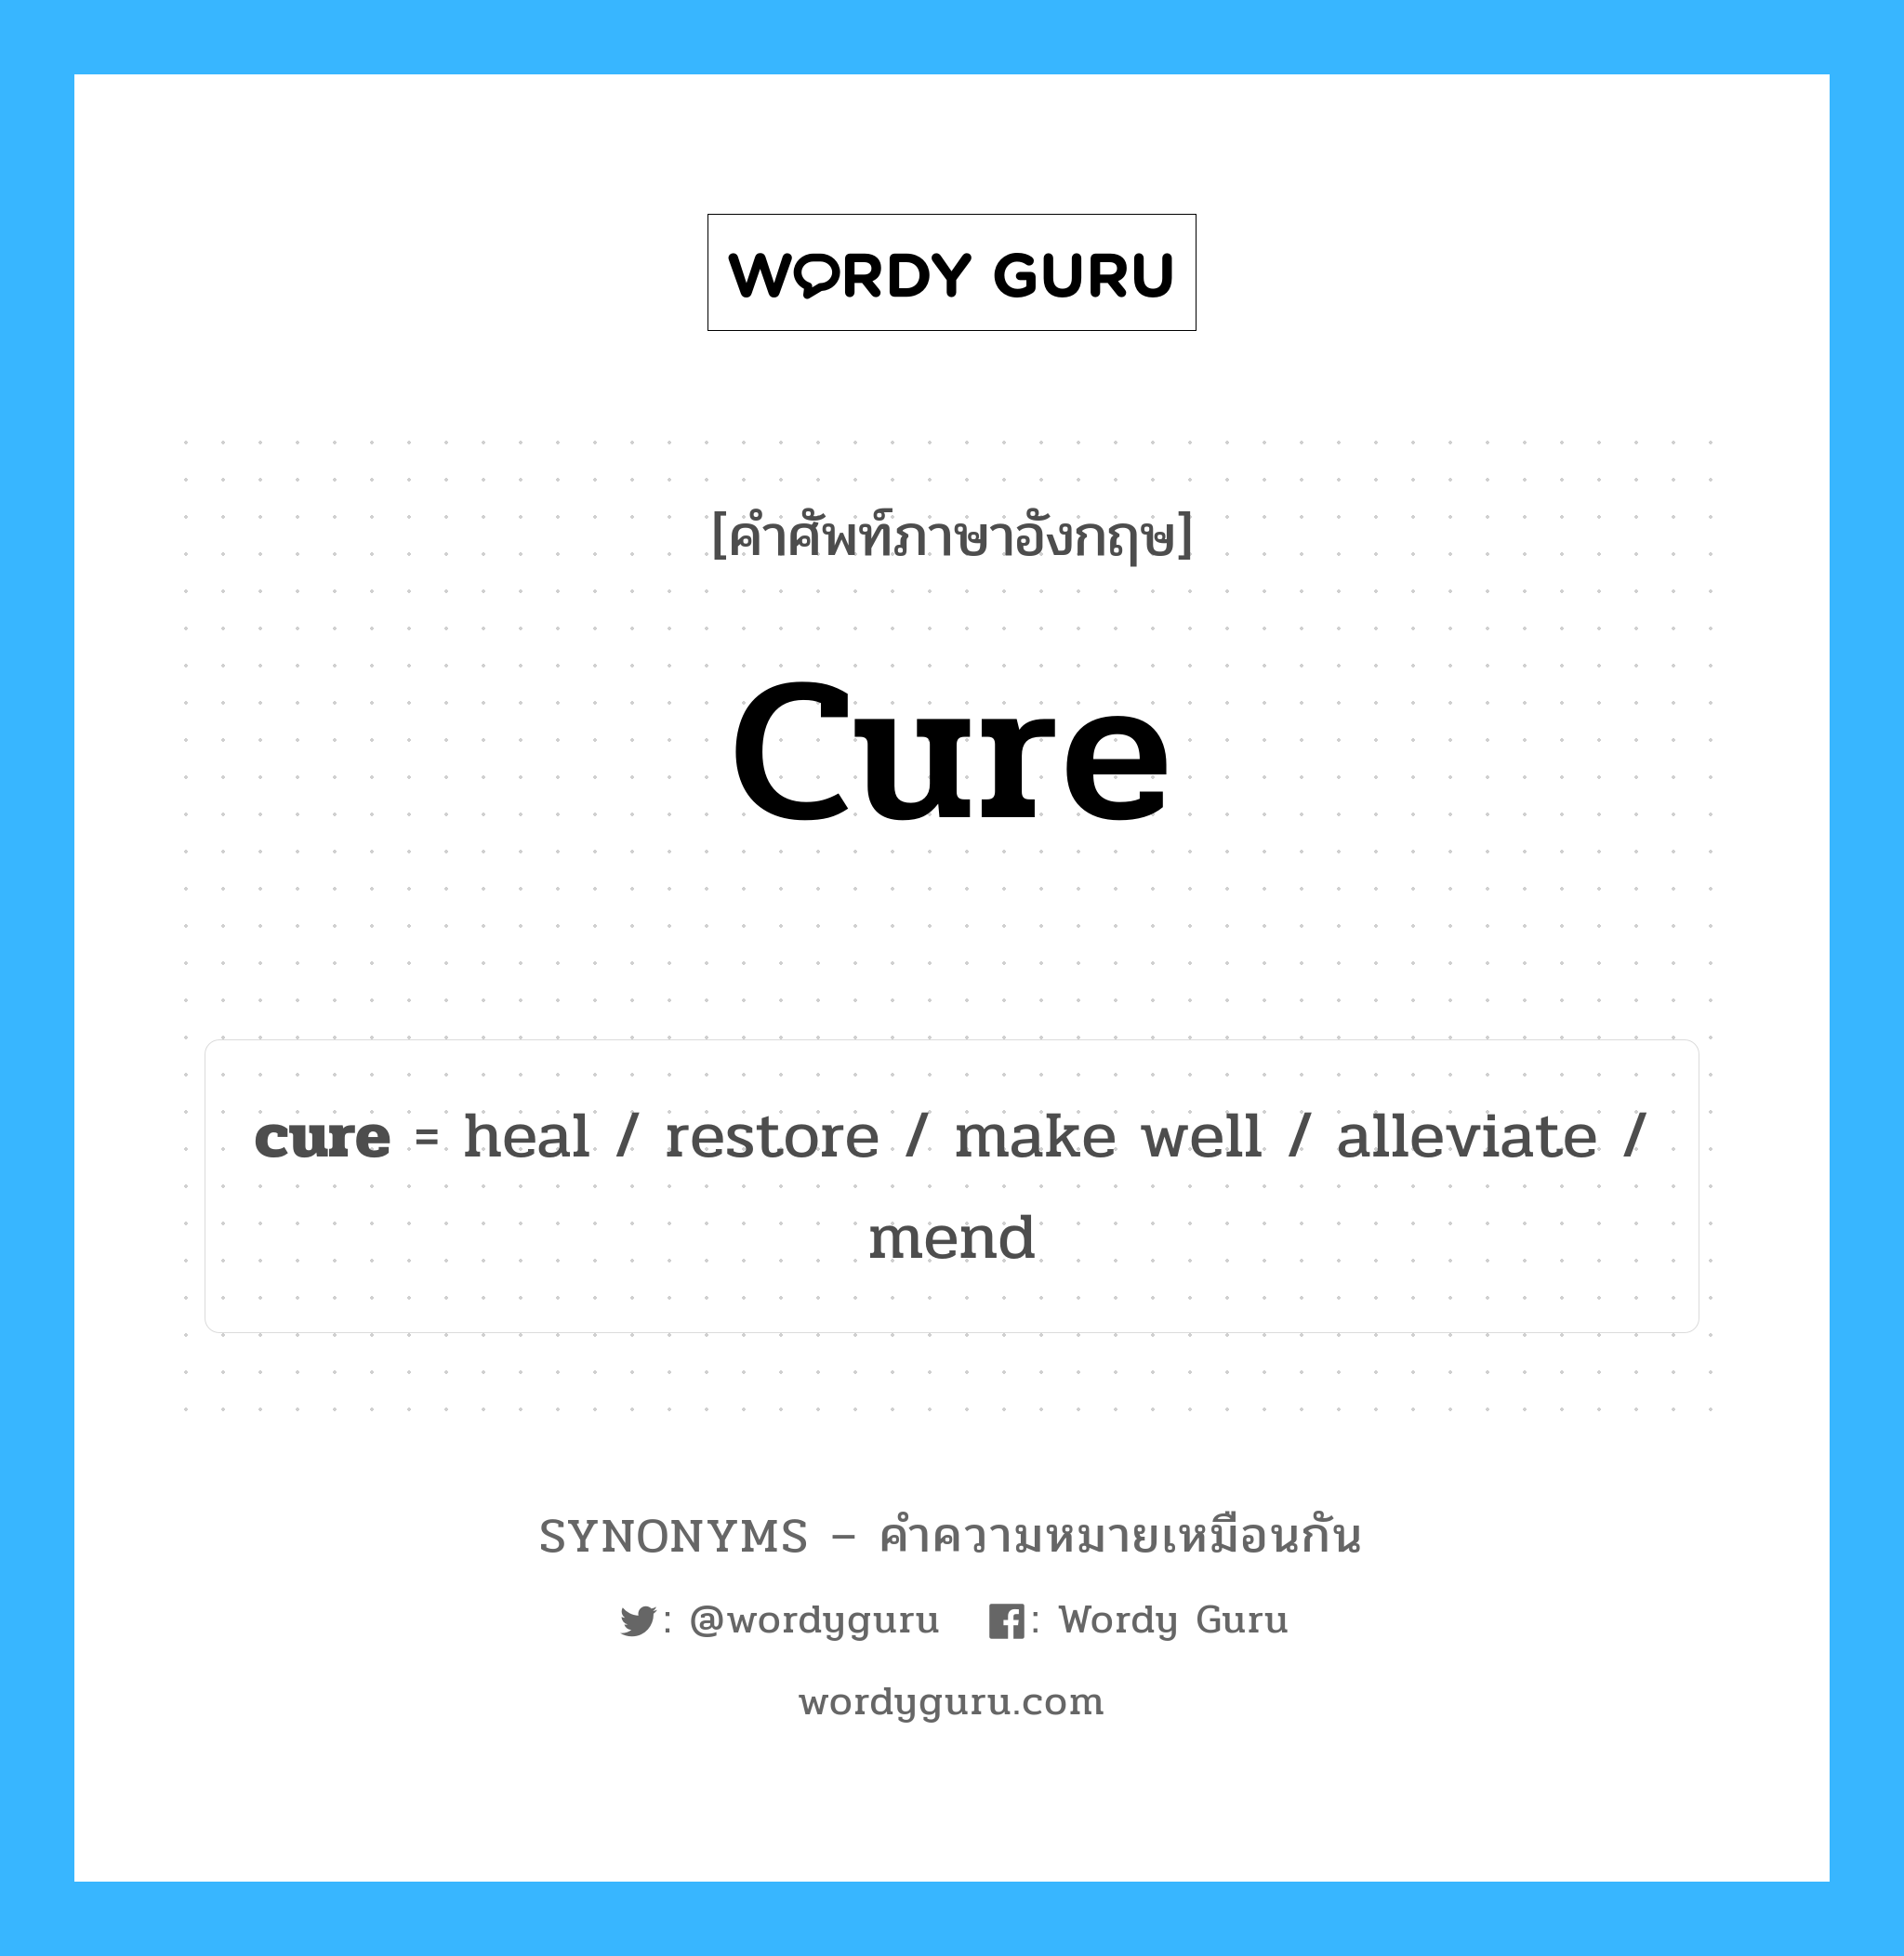 make well เป็นหนึ่งใน cure และมีคำอื่น ๆ อีกดังนี้, คำศัพท์ภาษาอังกฤษ make well ความหมายคล้ายกันกับ cure แปลว่า ทำได้ดี หมวด cure